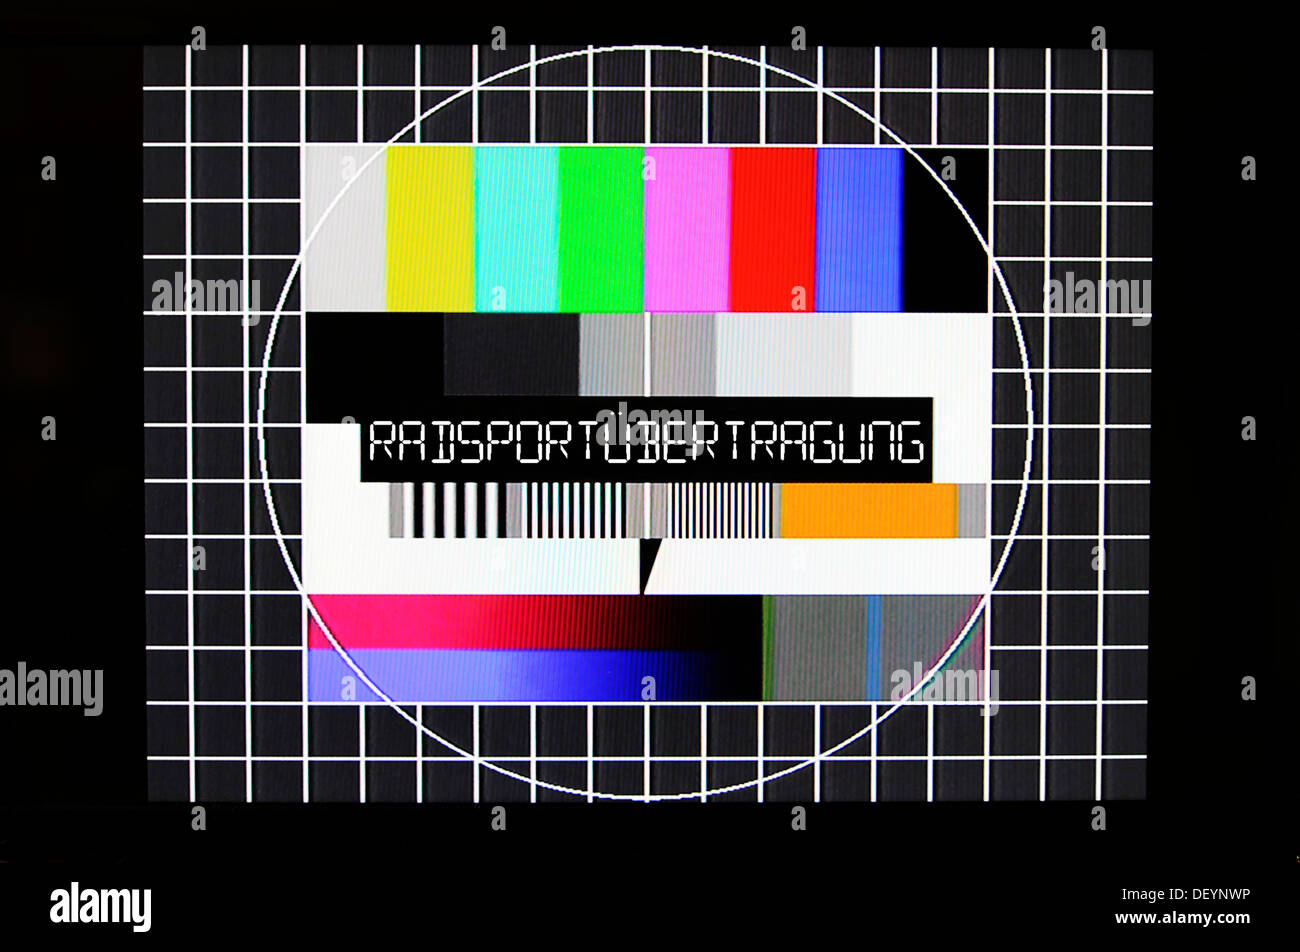 TV-Testbild mit "Radsportuebertragung" oder die Übertragung von einem Radsport-Event, symbolisches Bild für keine live-Übertragung der Stockfoto